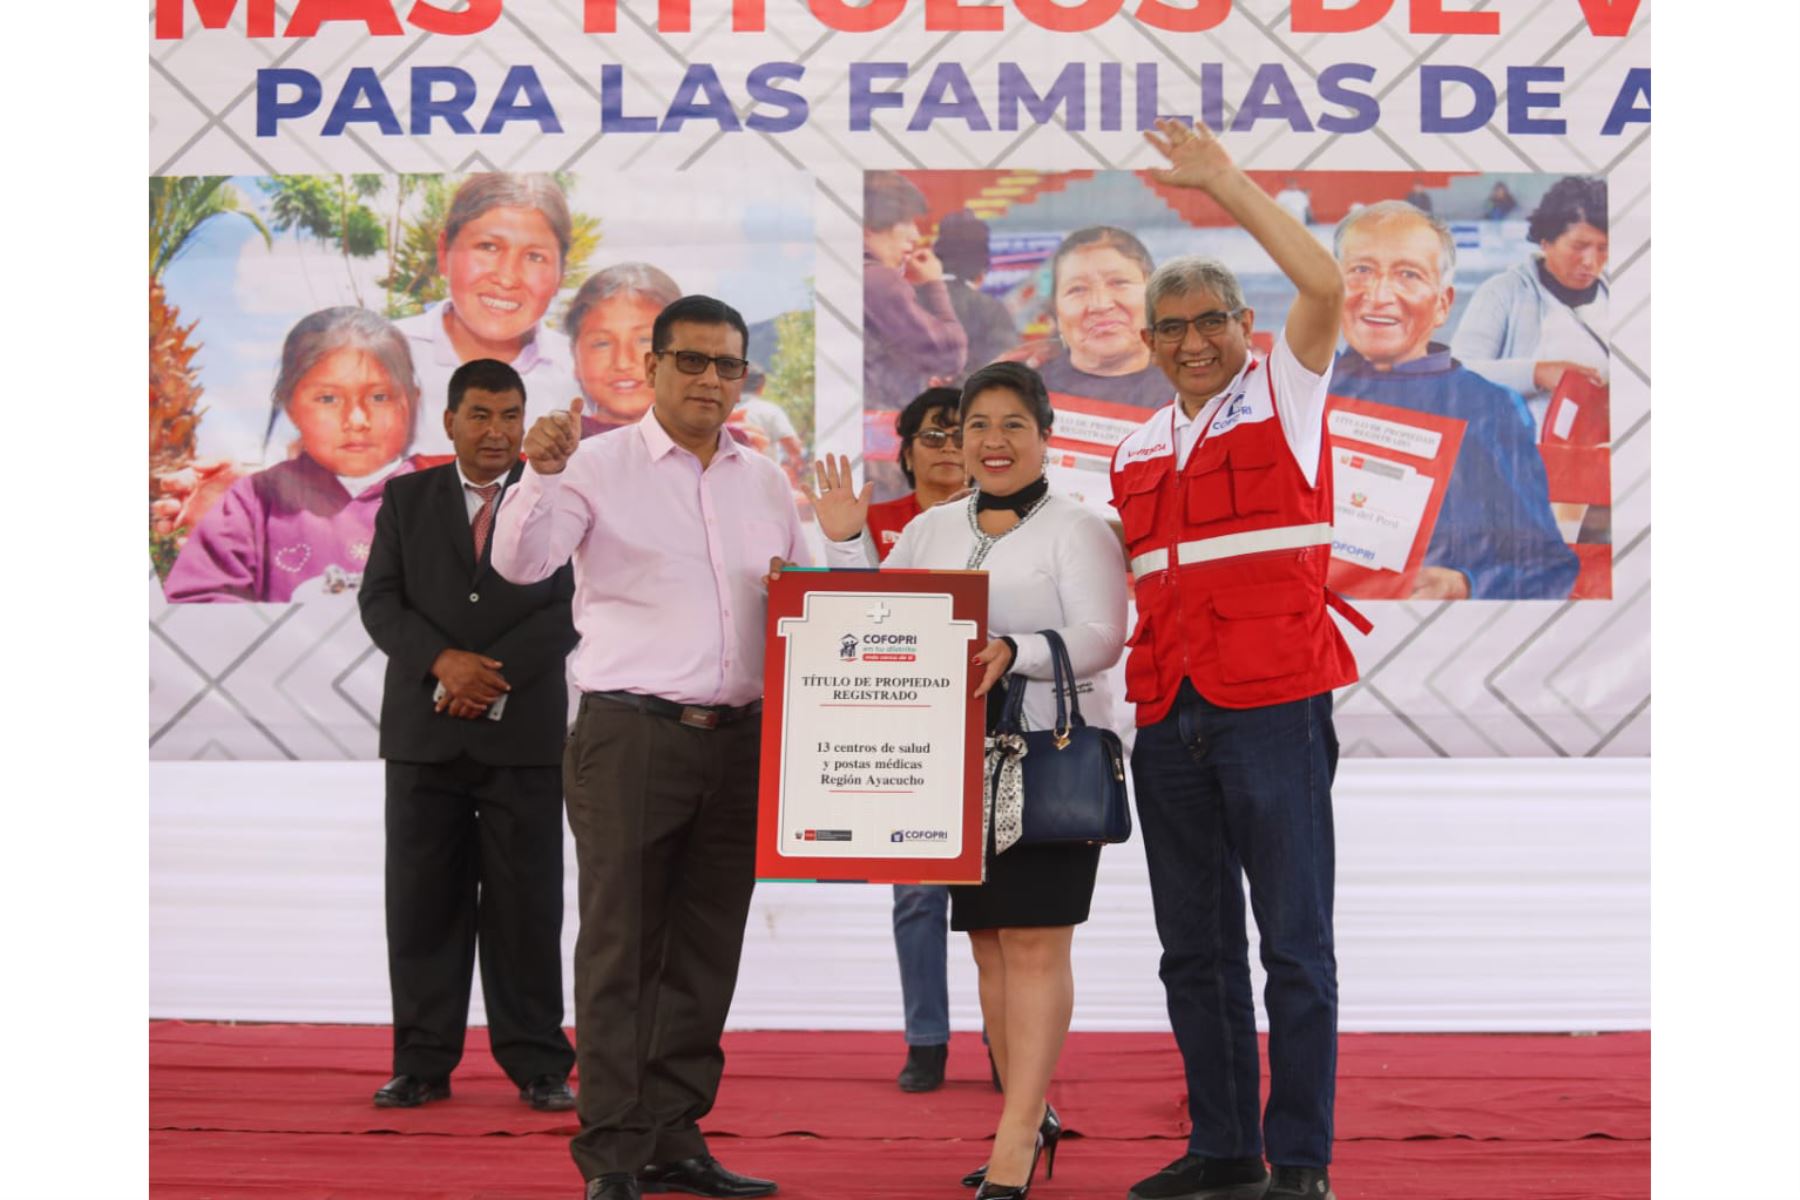 Entregan más de 2,100 títulos de propiedad a familias e instituciones públicas de Ayacucho.